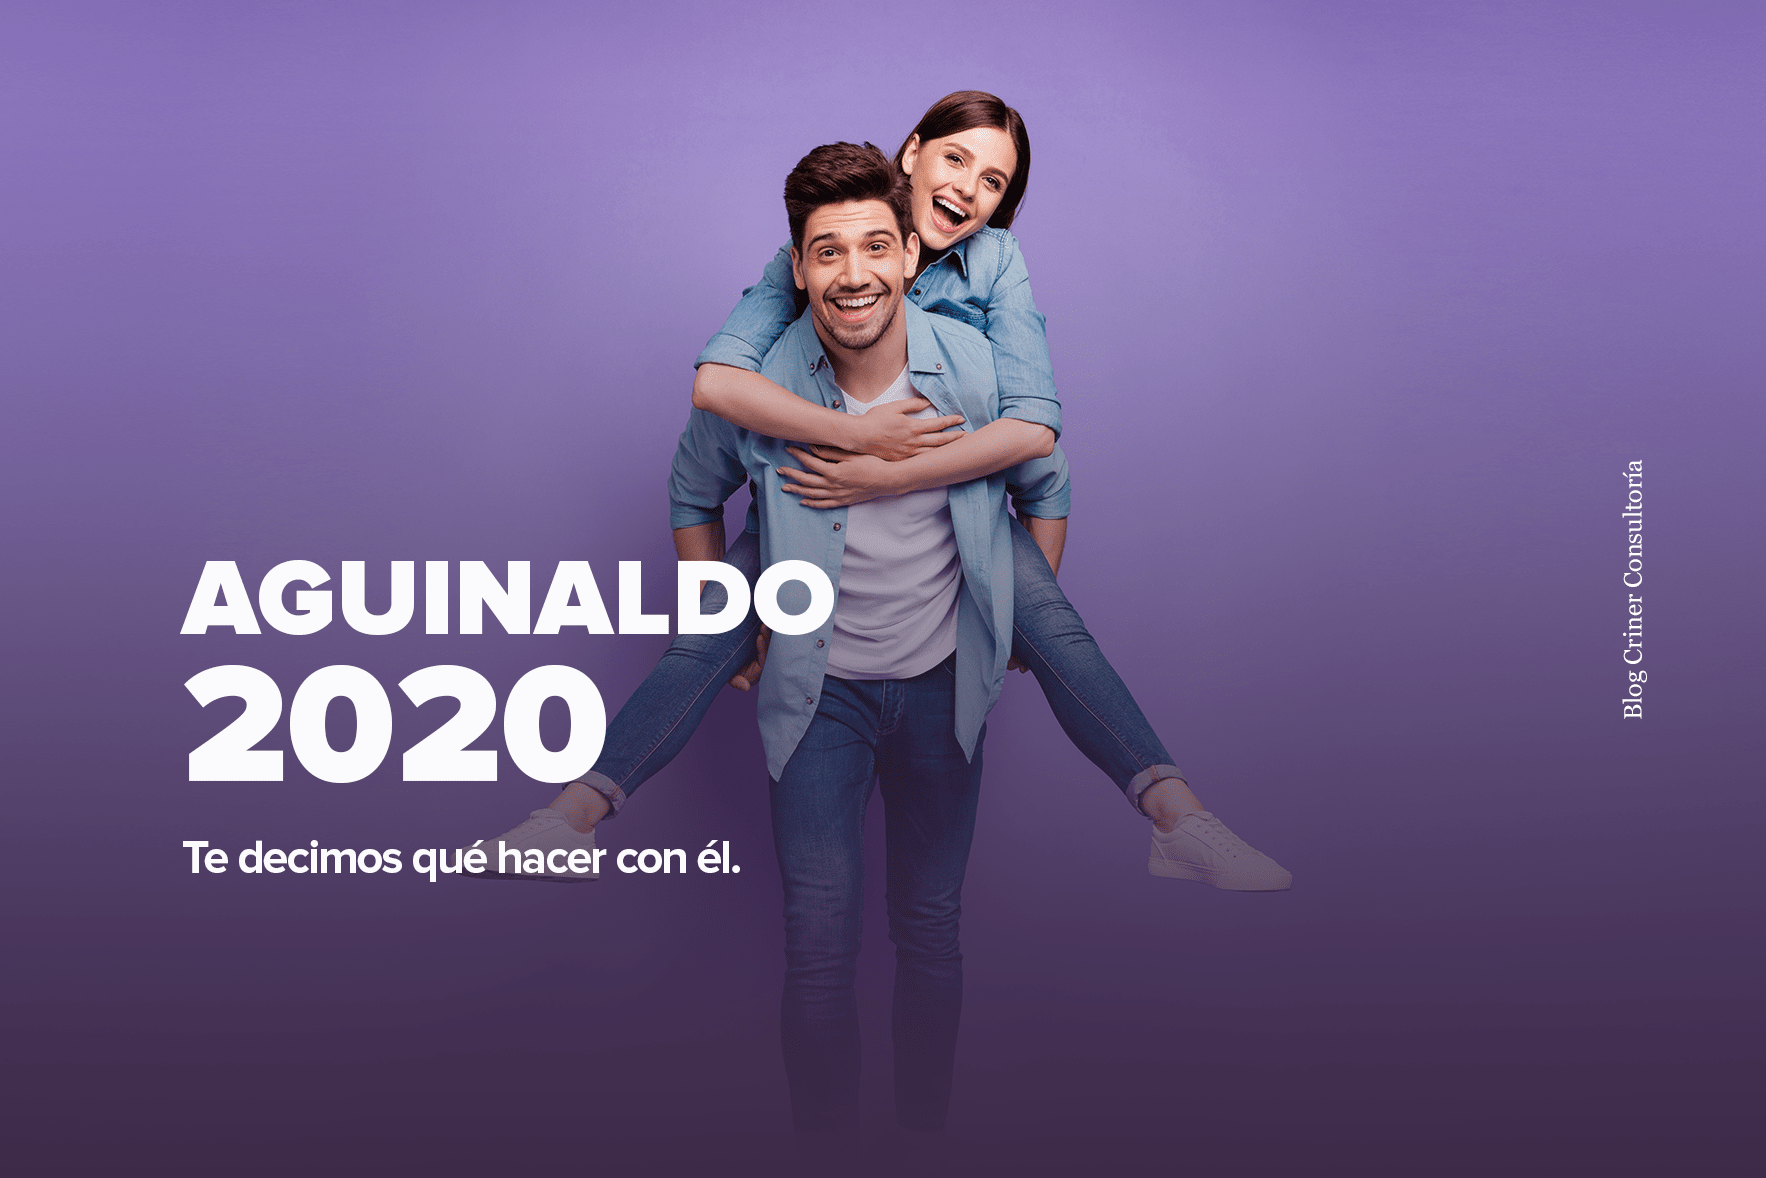 aguinaldo-2020-blog-criner